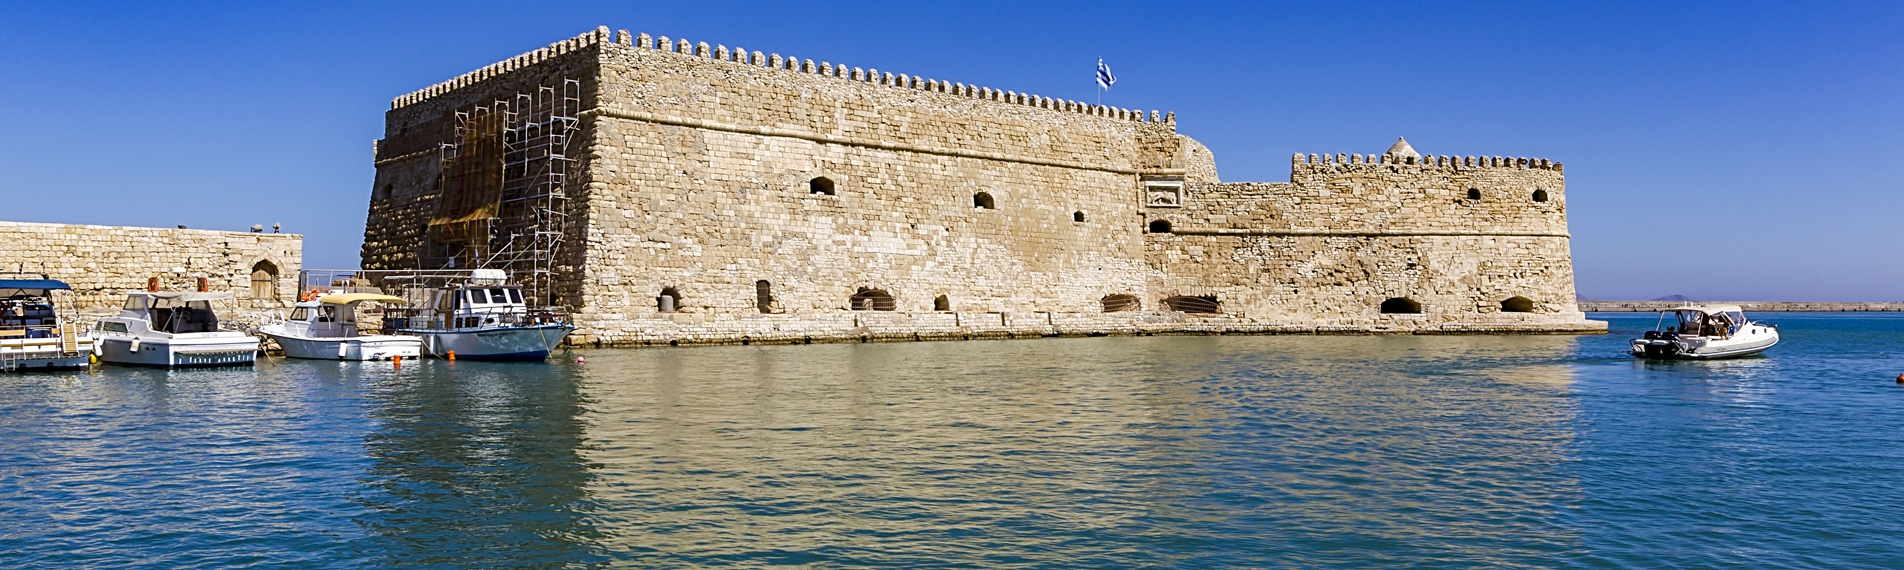 Fortezza sul mare nella città di Heraklion sull'isola di Creta